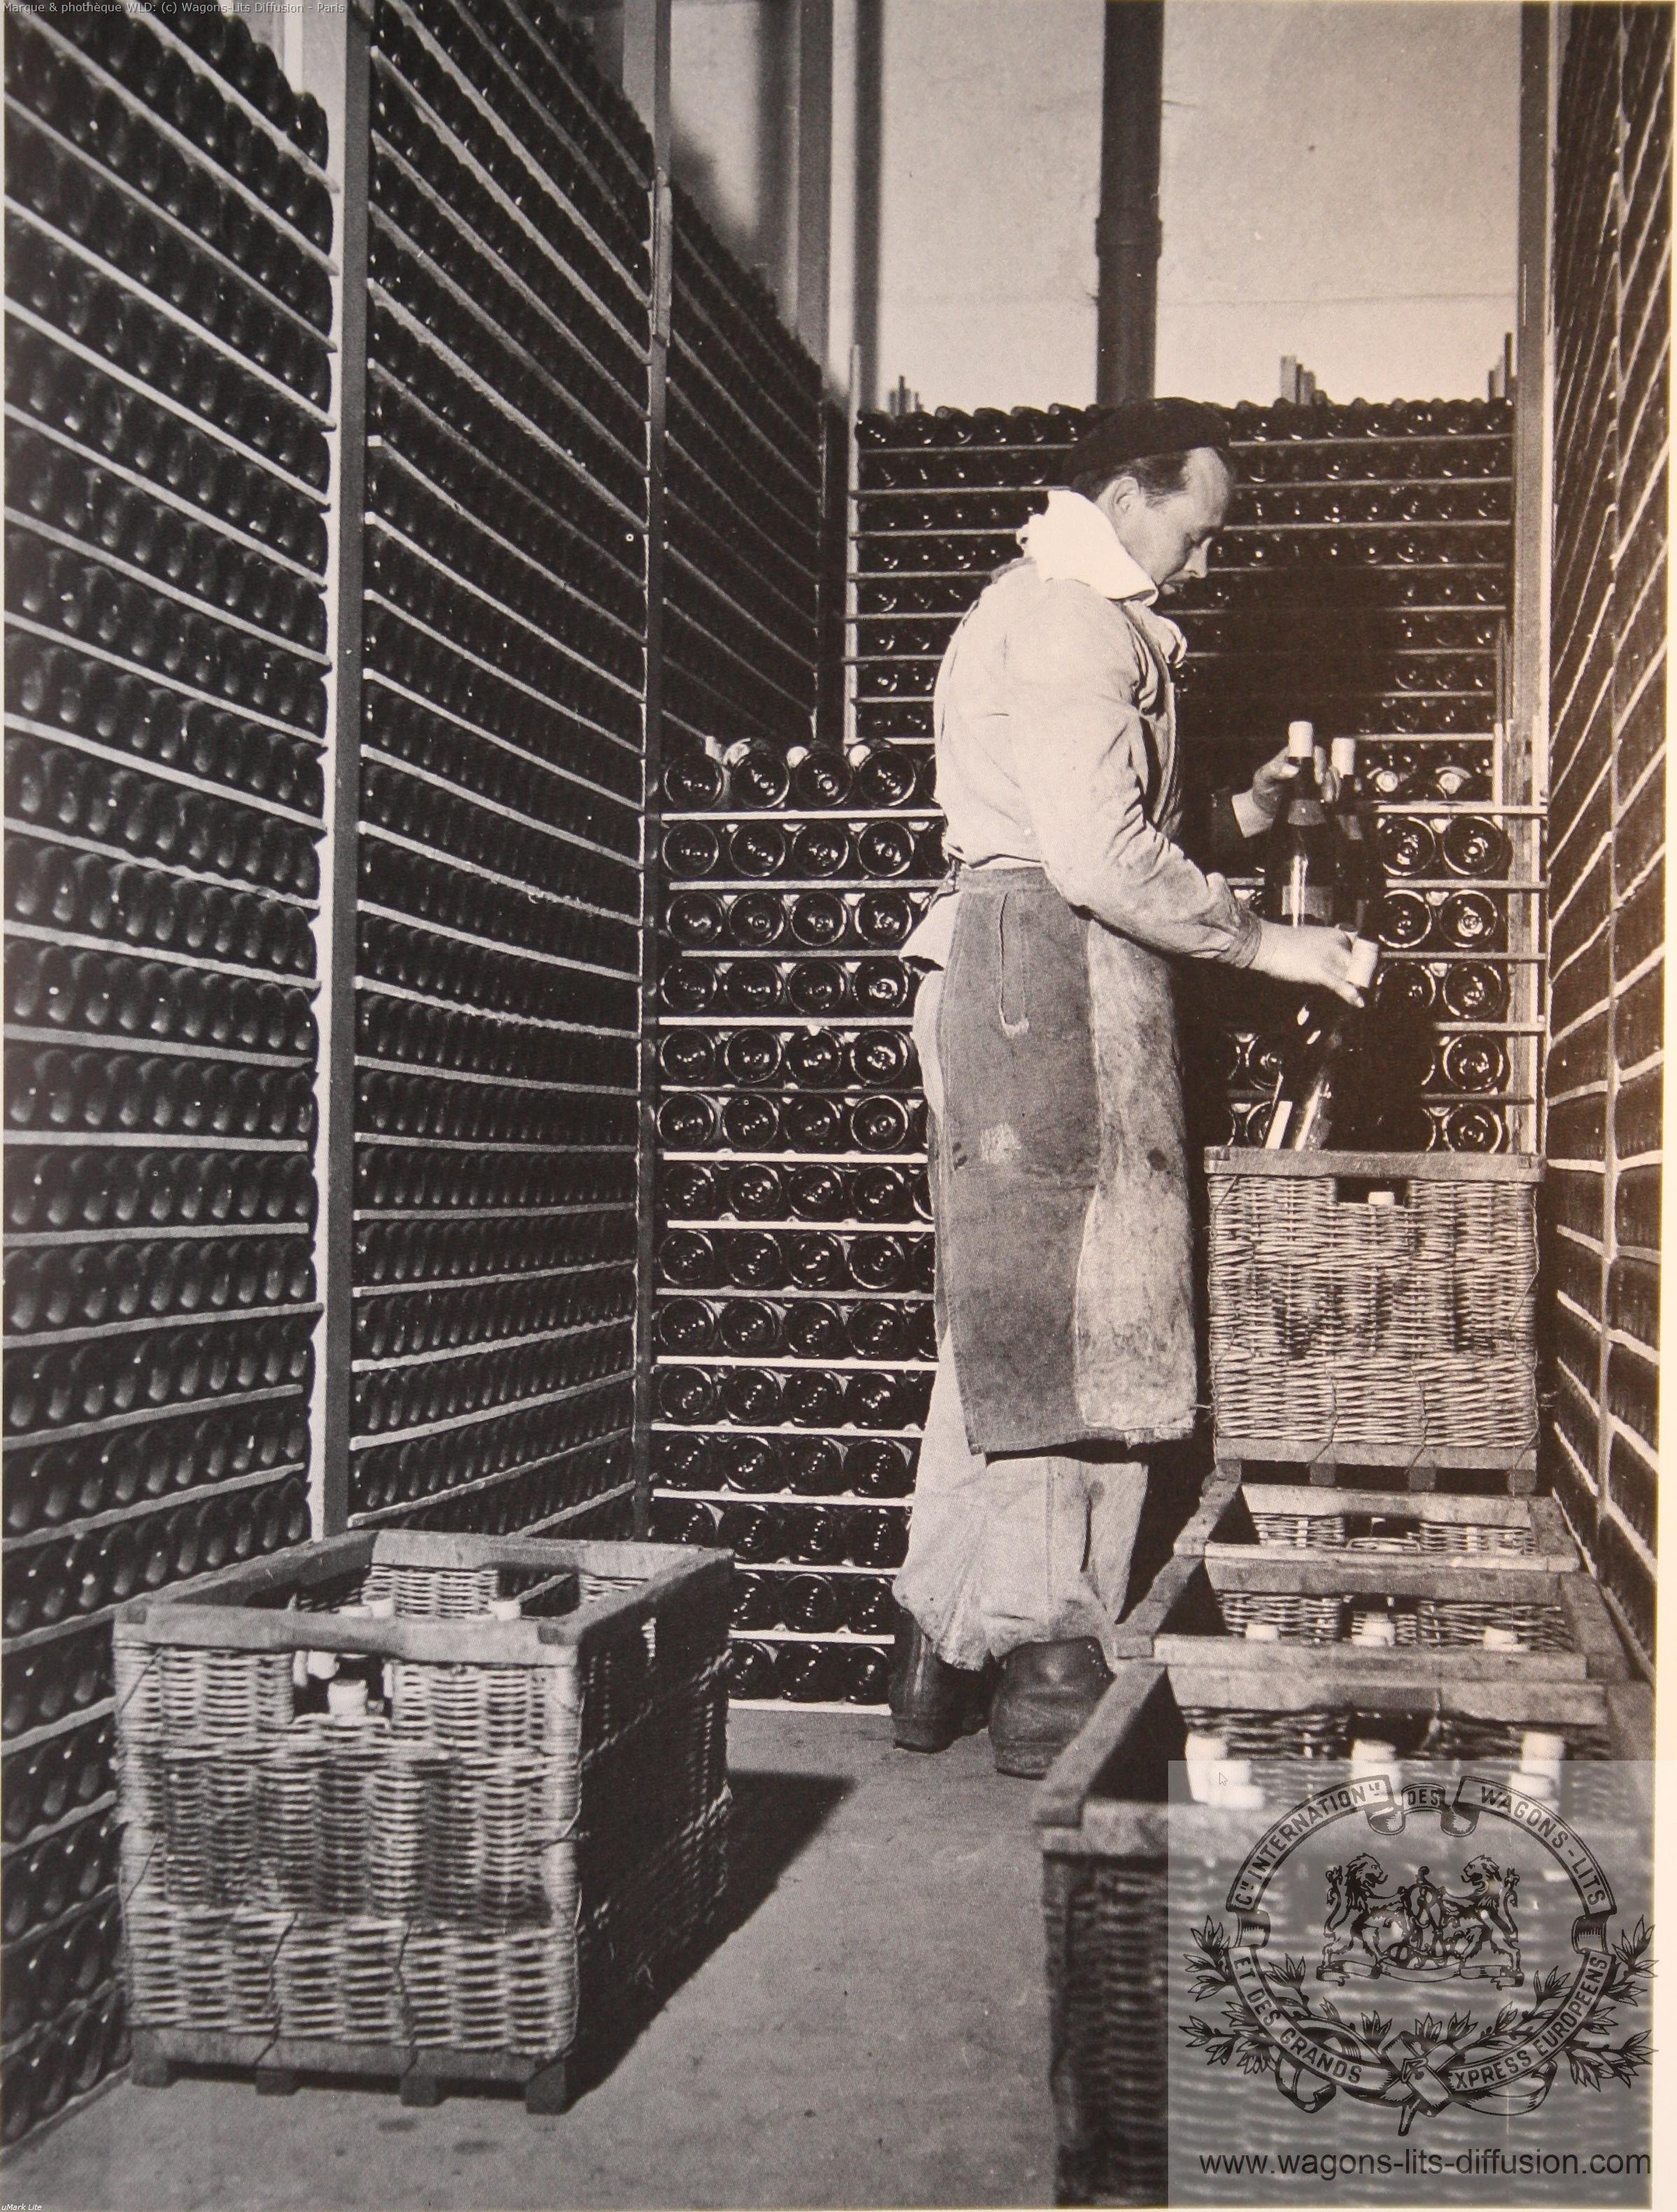 Wl cave a vin de saint ouen 1950